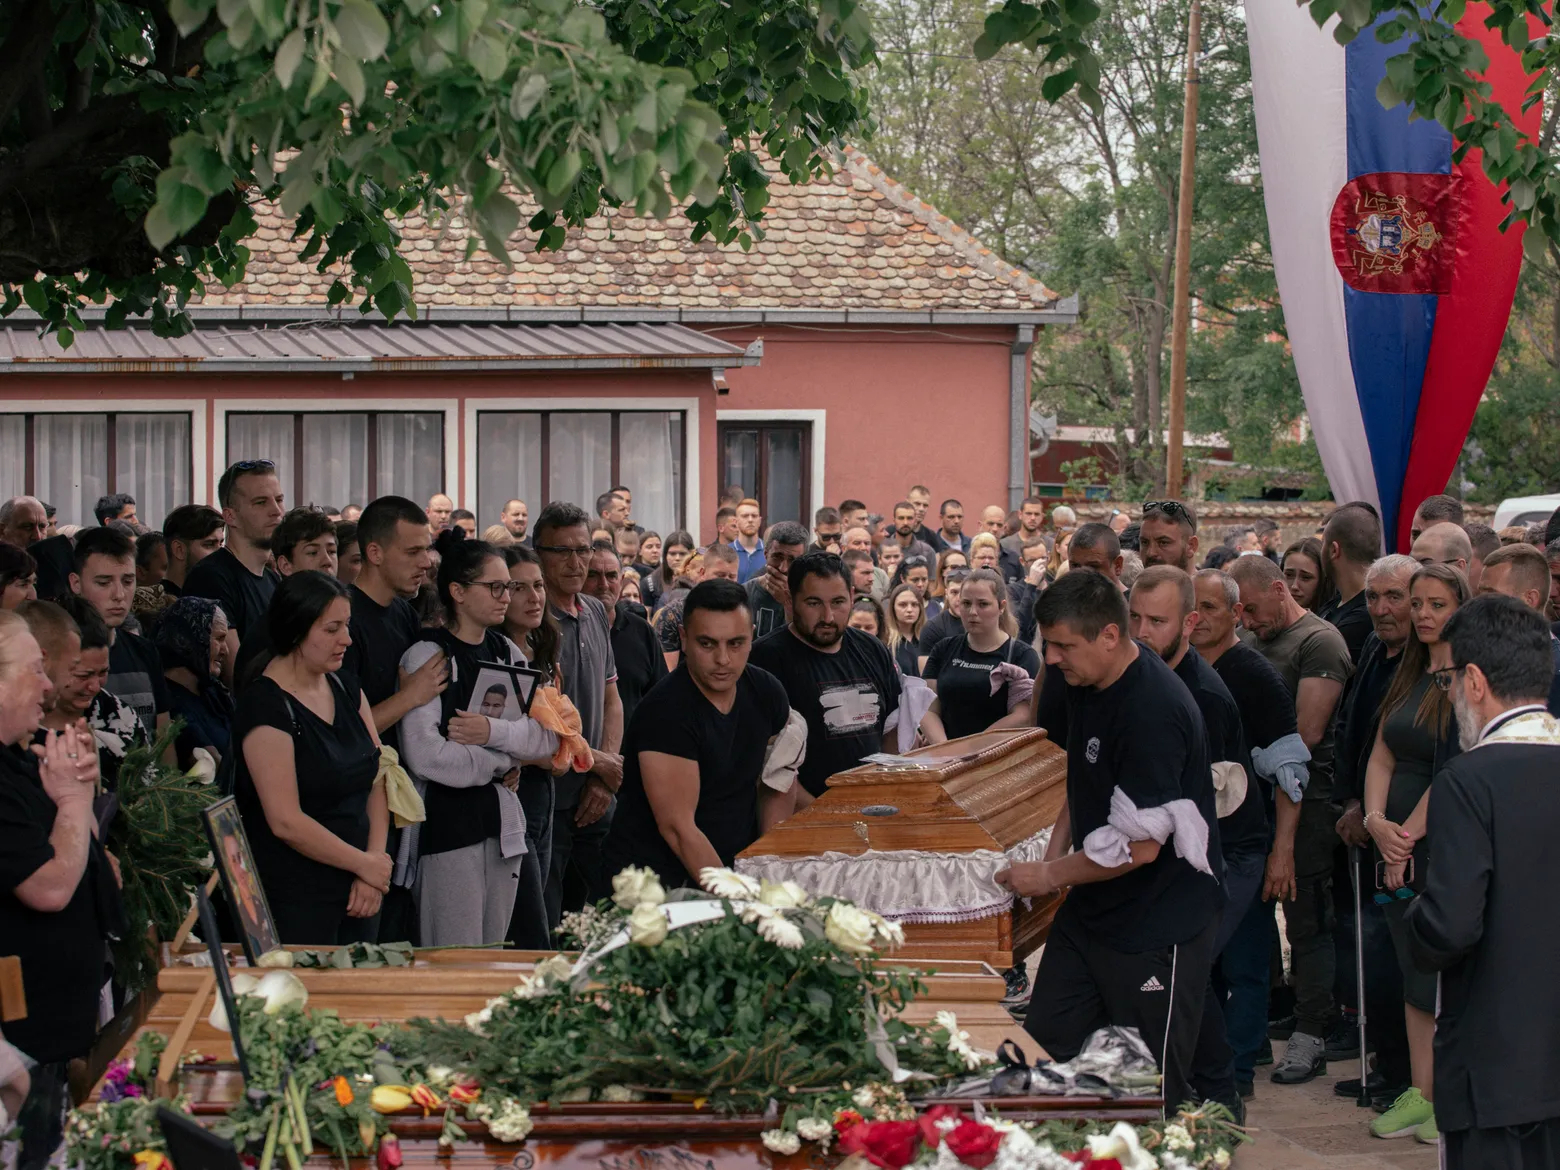 استقالة وزير التربية الصربي بعد مجزرة المدرسة